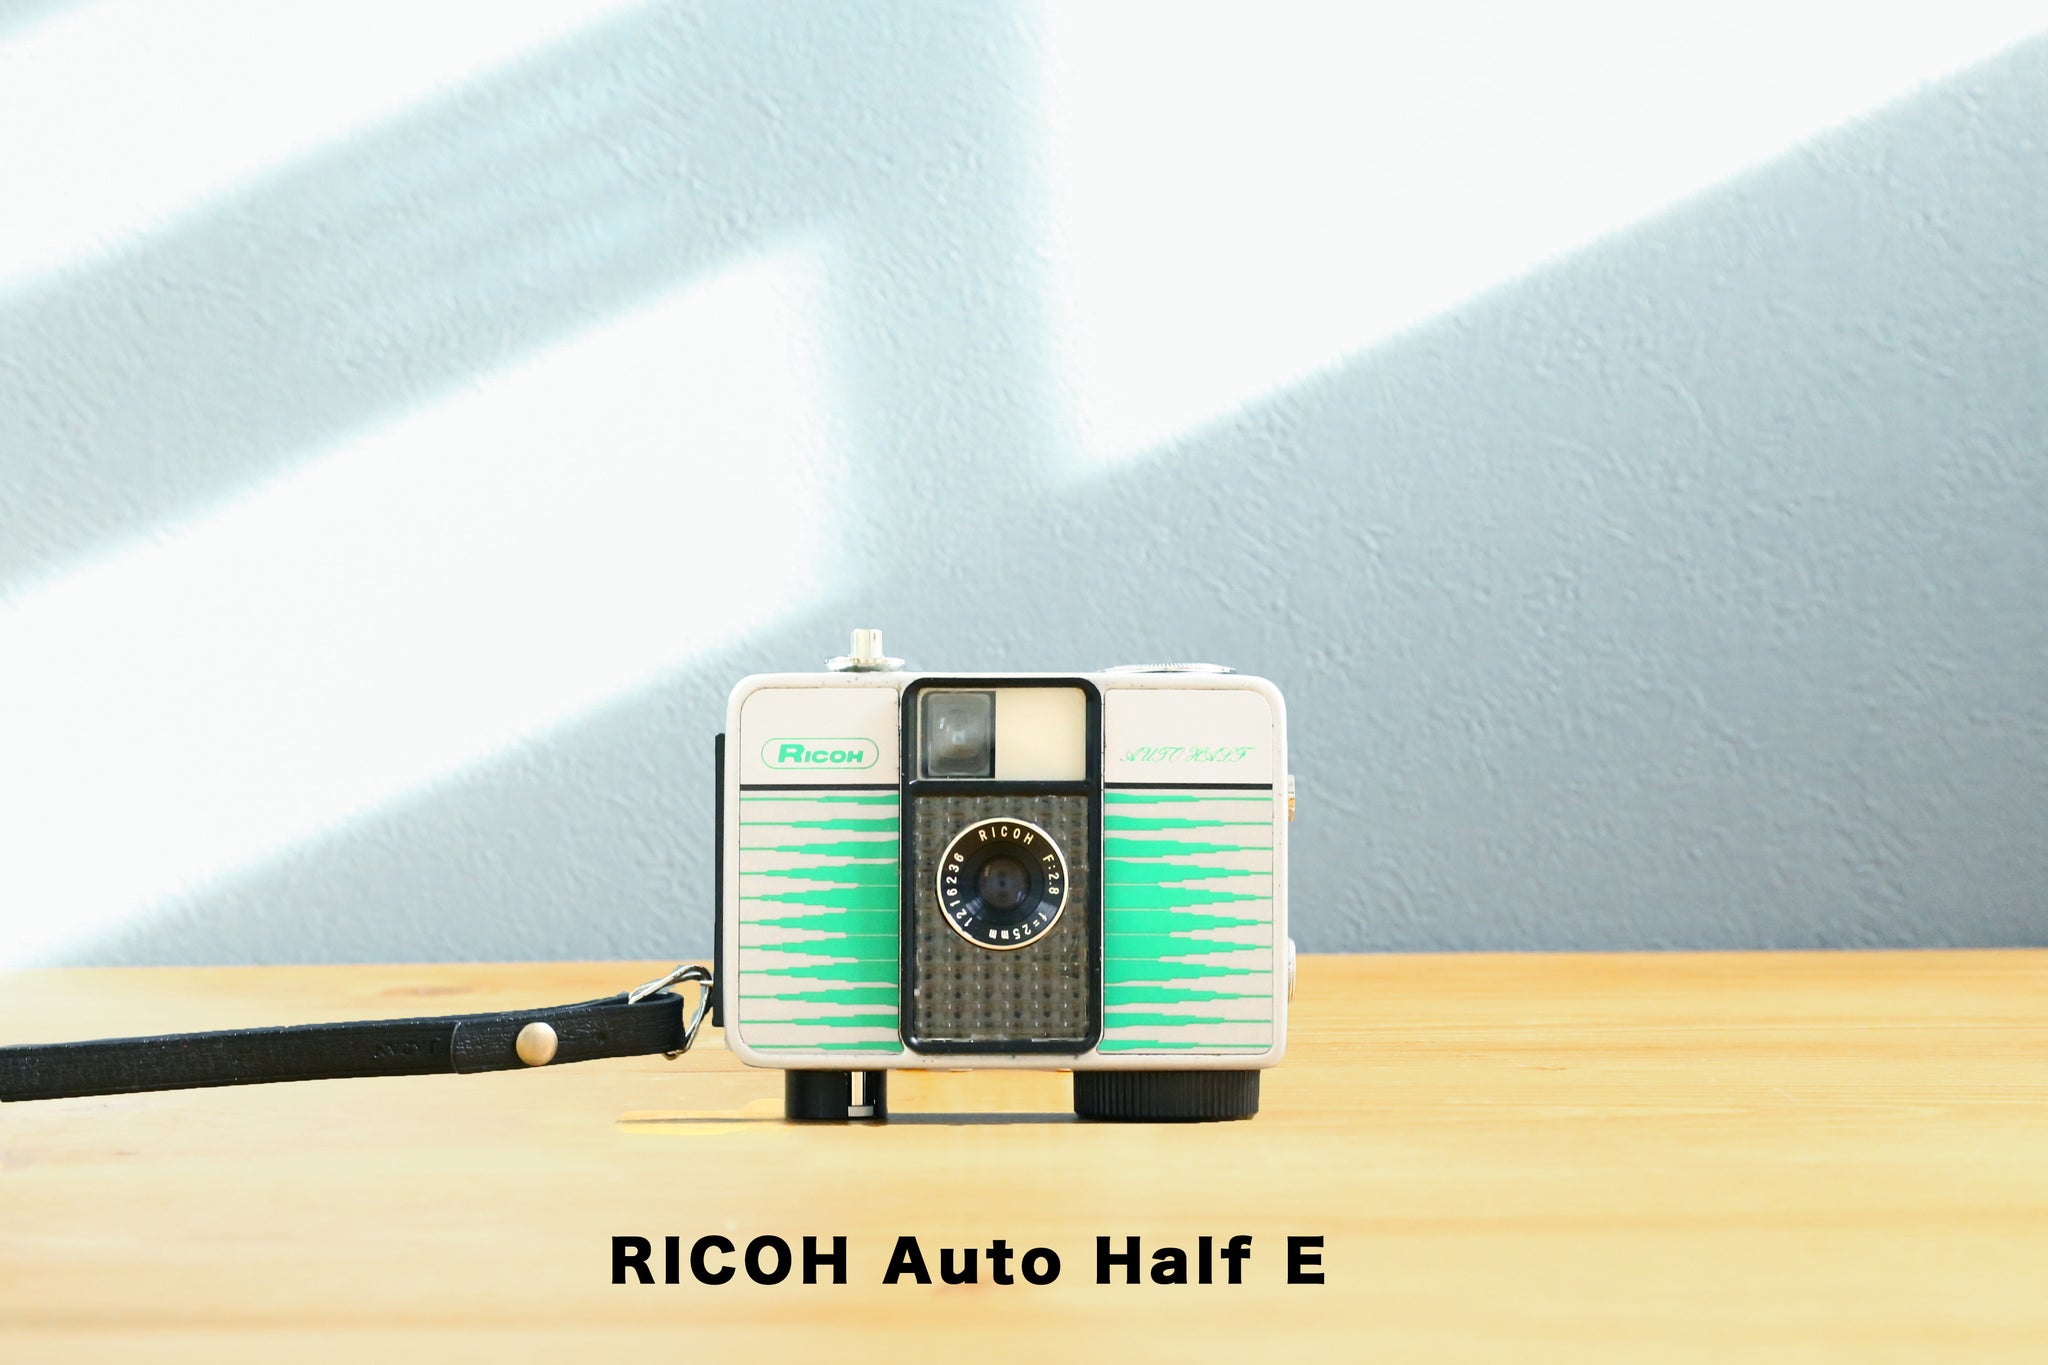 RICOH Auto Half E【完動品】 – Ein Camera